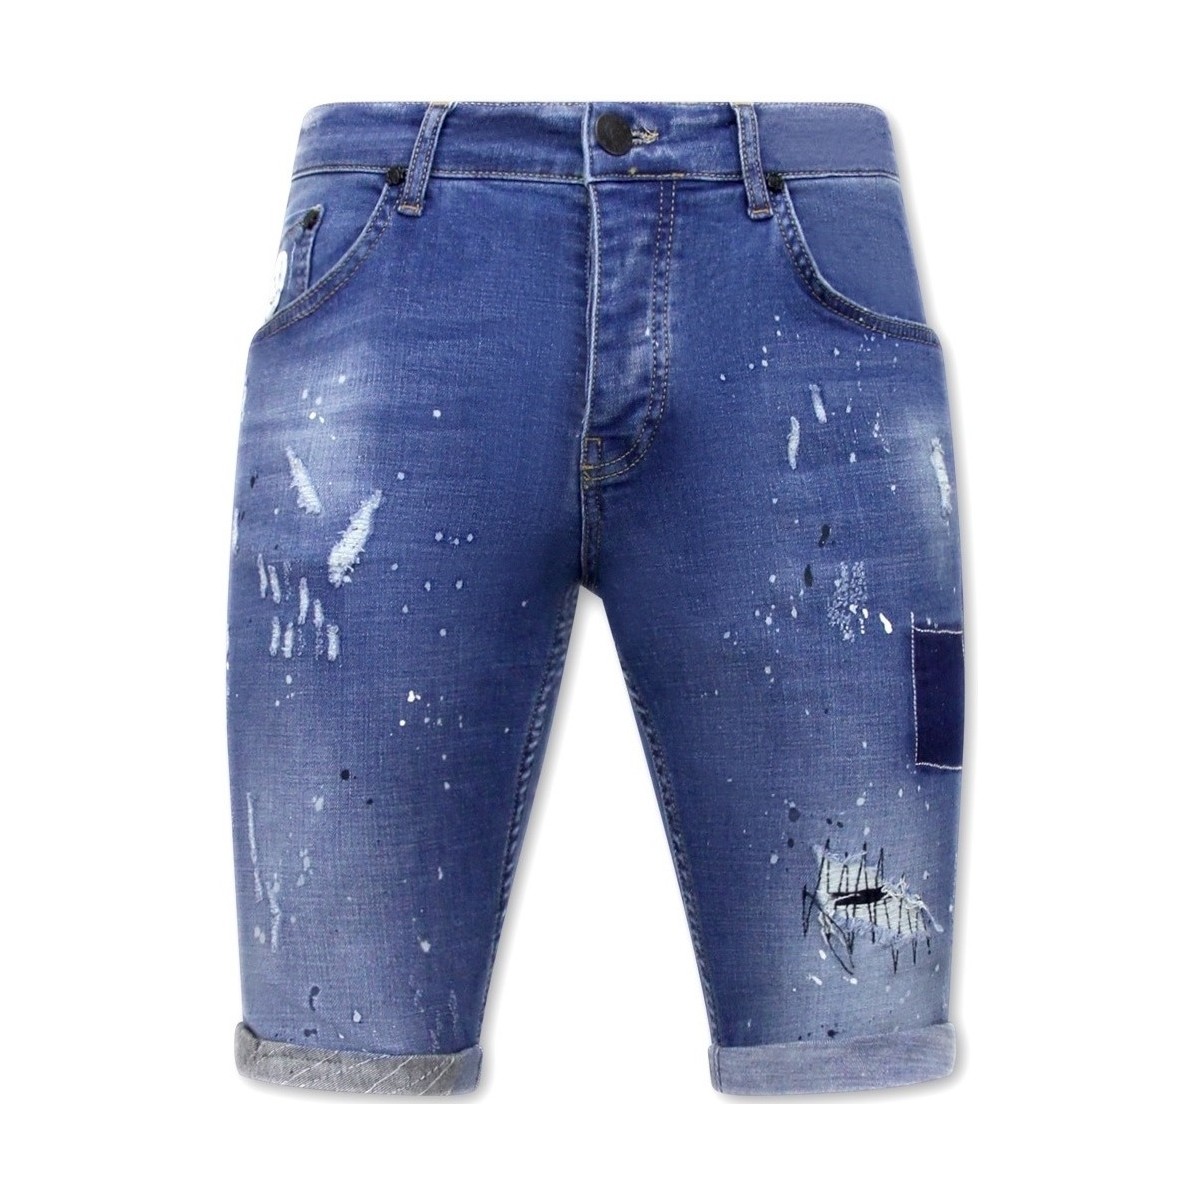 Textil Muži Tříčtvrteční kalhoty Local Fanatic 134737346 Modrá